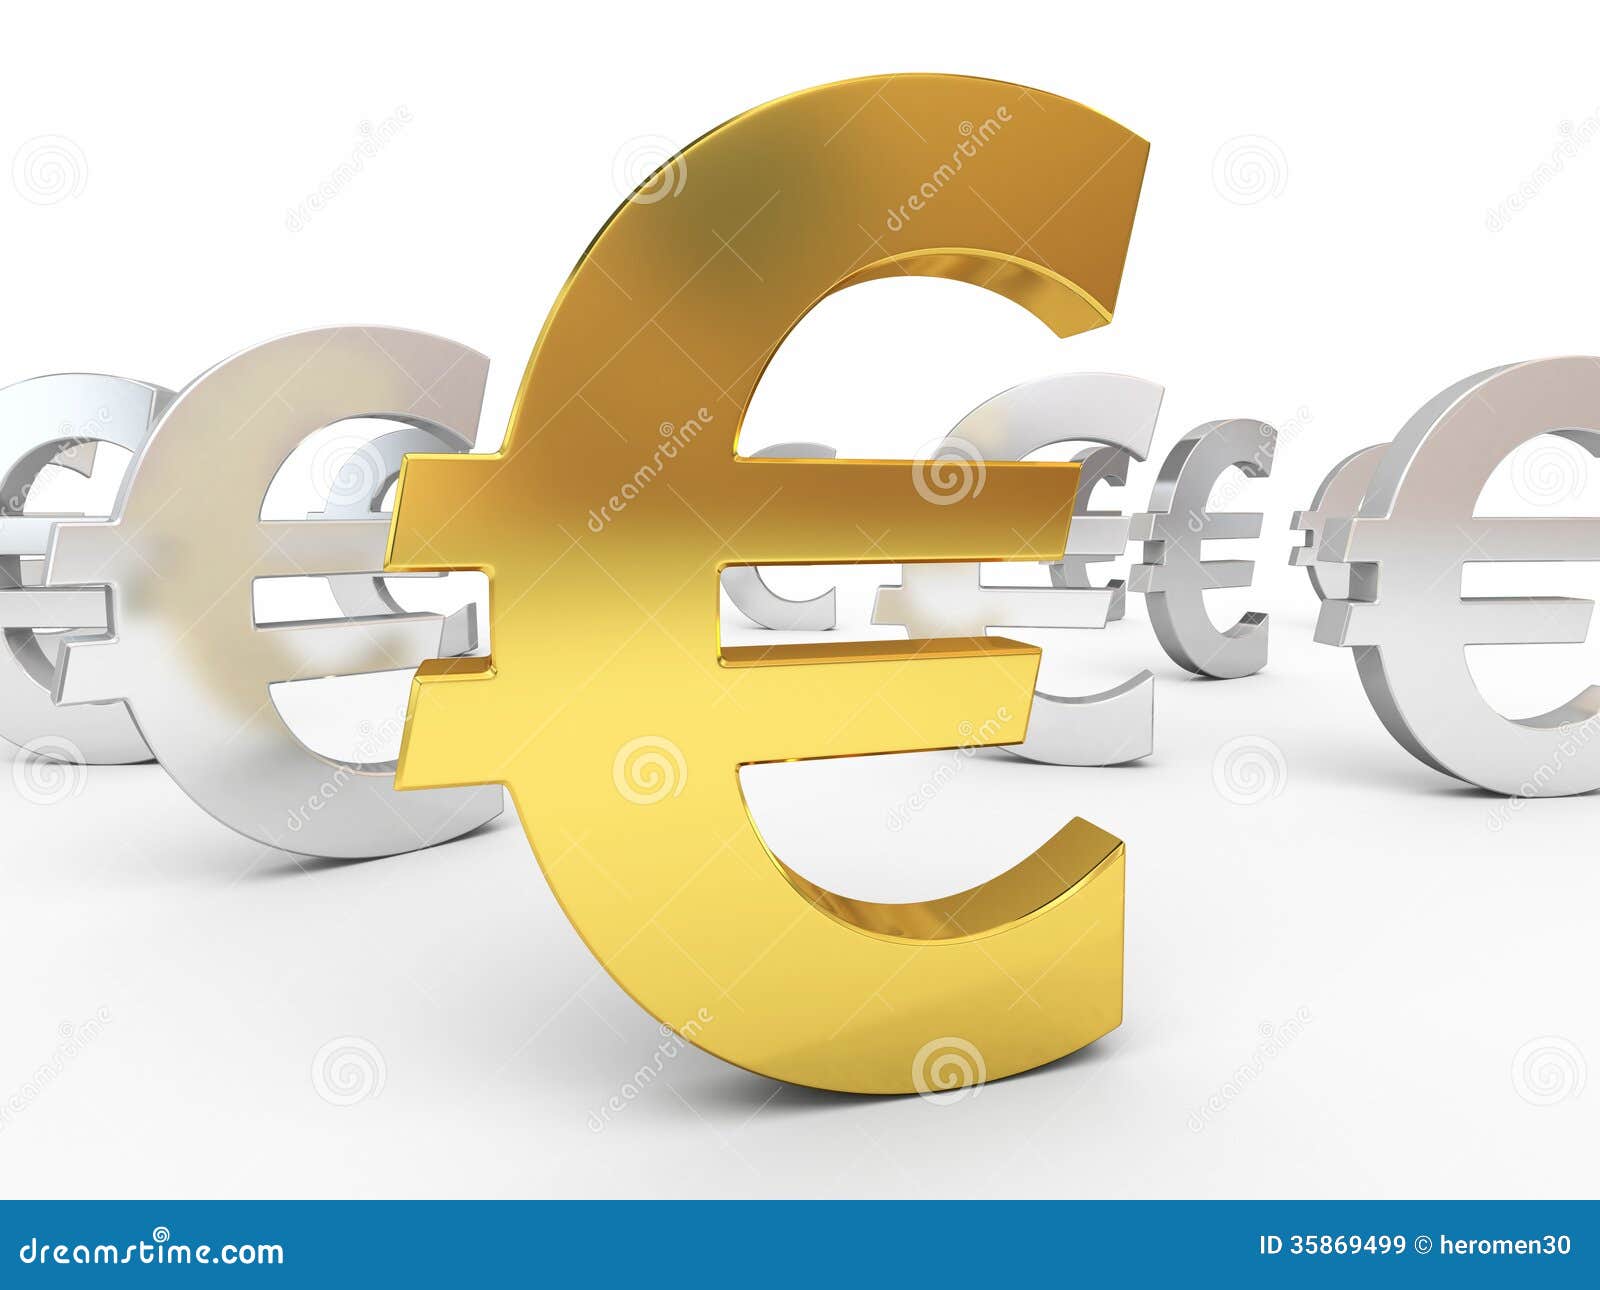 euro zeichen clipart - photo #37